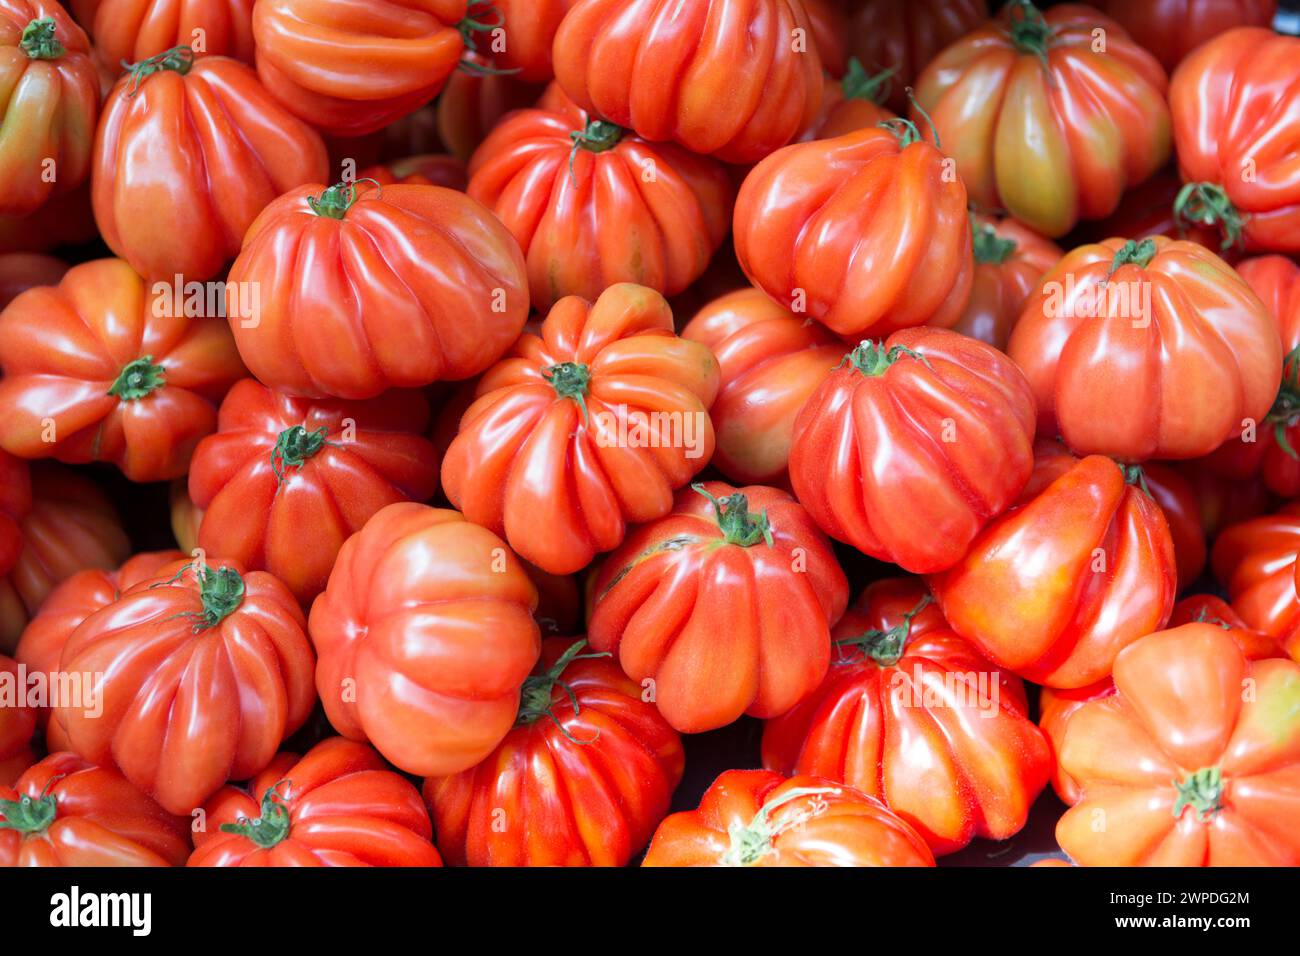 UK, London, Costoluto Fiorentino tomatoes for sale in Borough Market. Stock Photo